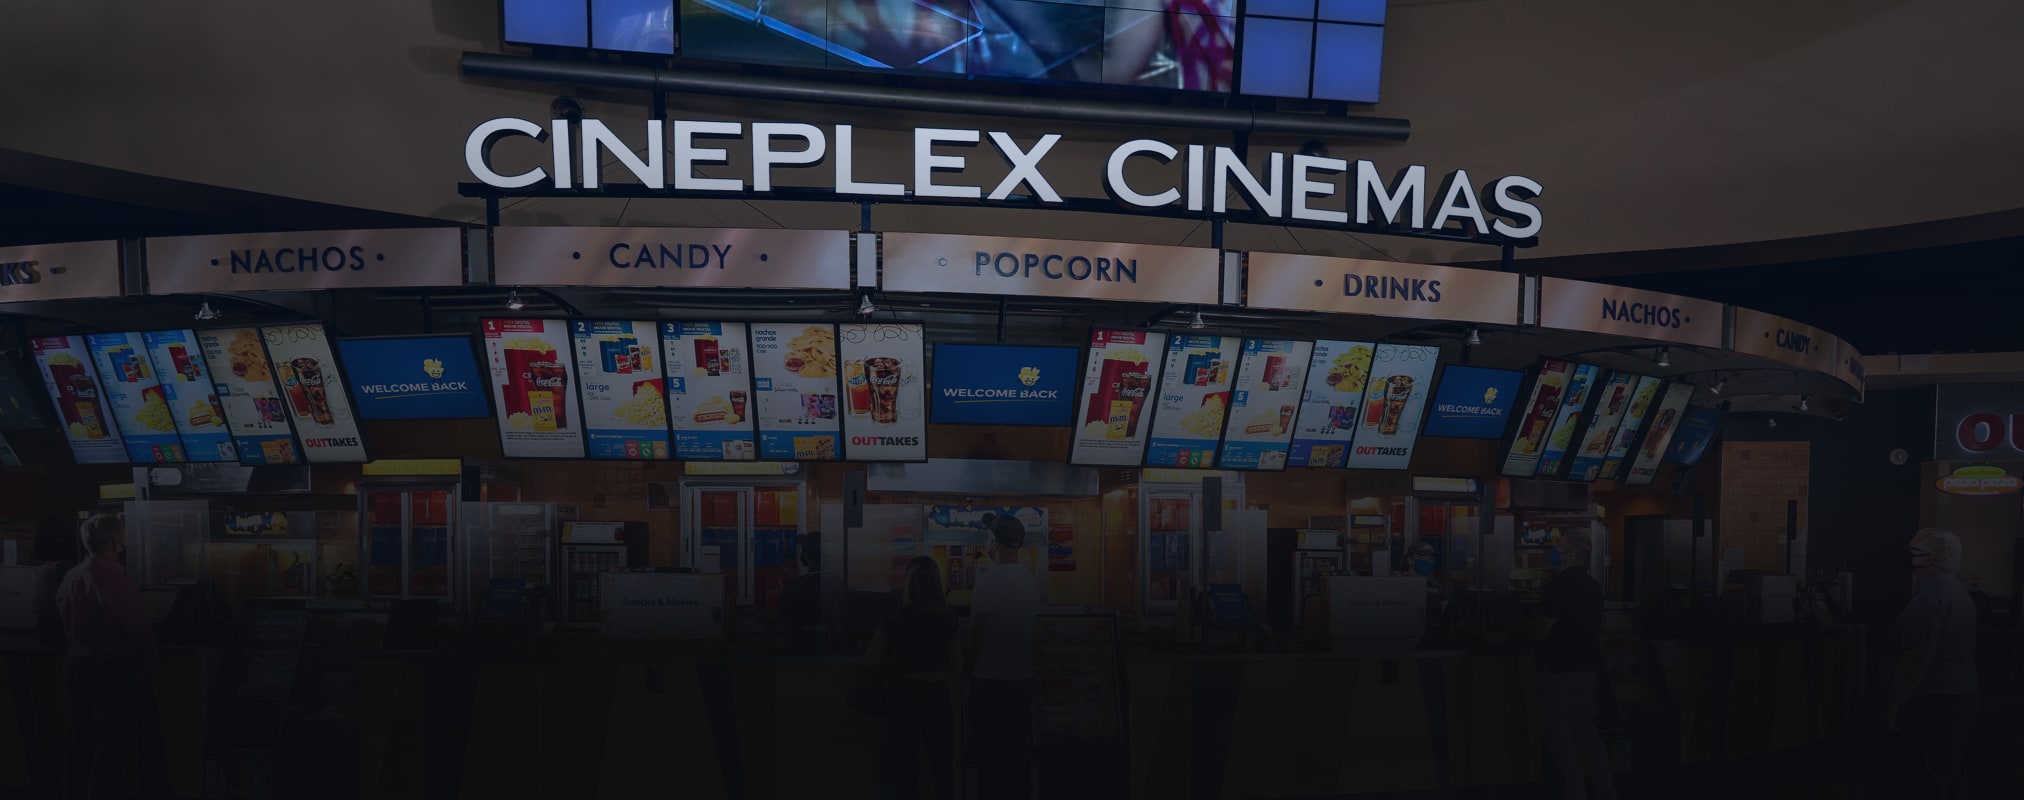 xbox cineplex app